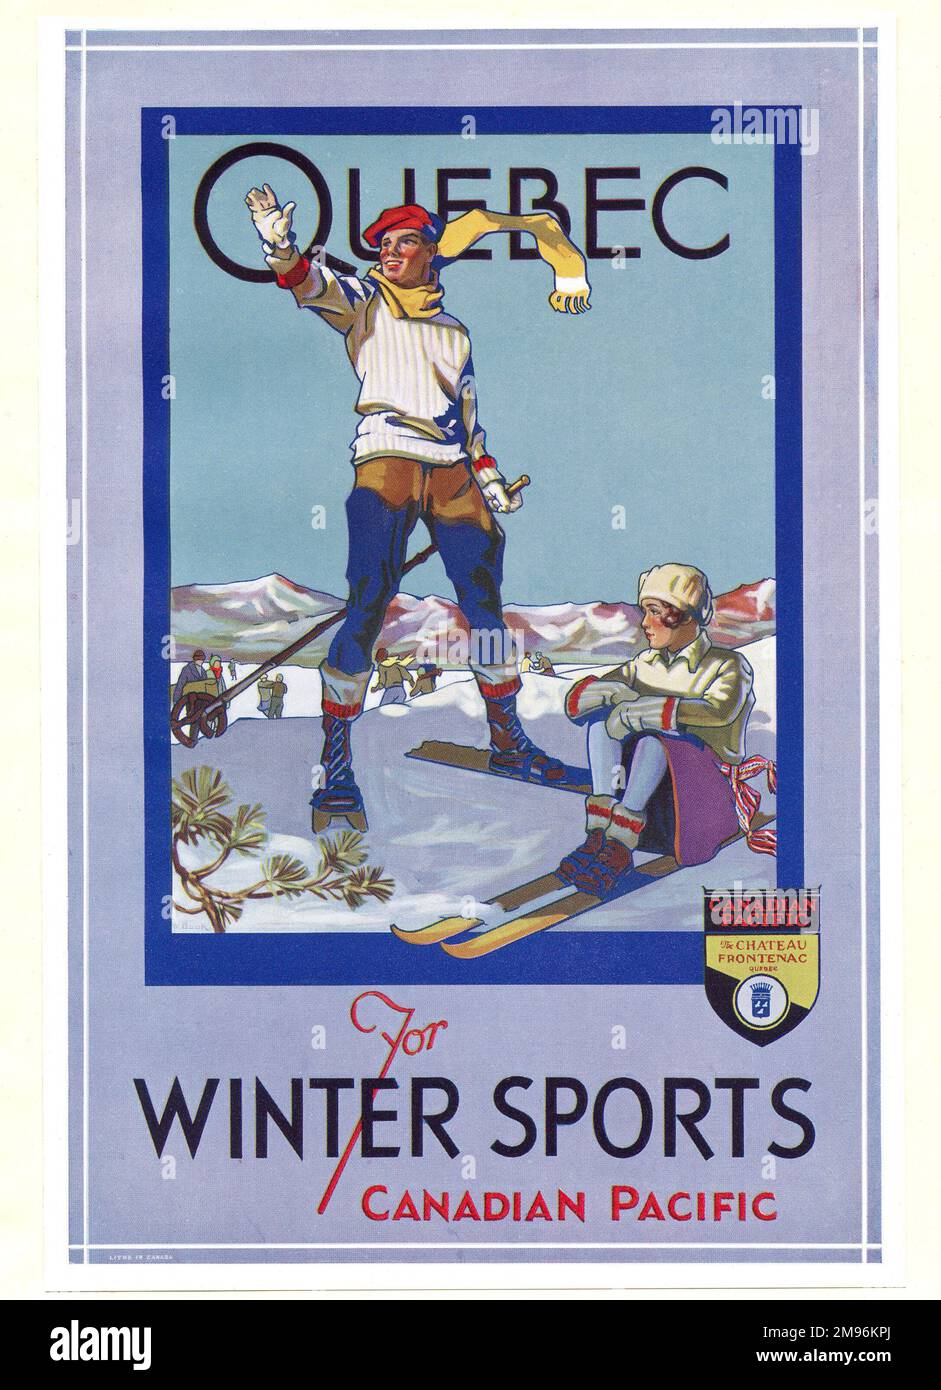 Diseño de póster para Quebec Winter Sports, a través del Pacífico canadiense, mostrando a una pareja en esquís en un paisaje nevado. Foto de stock